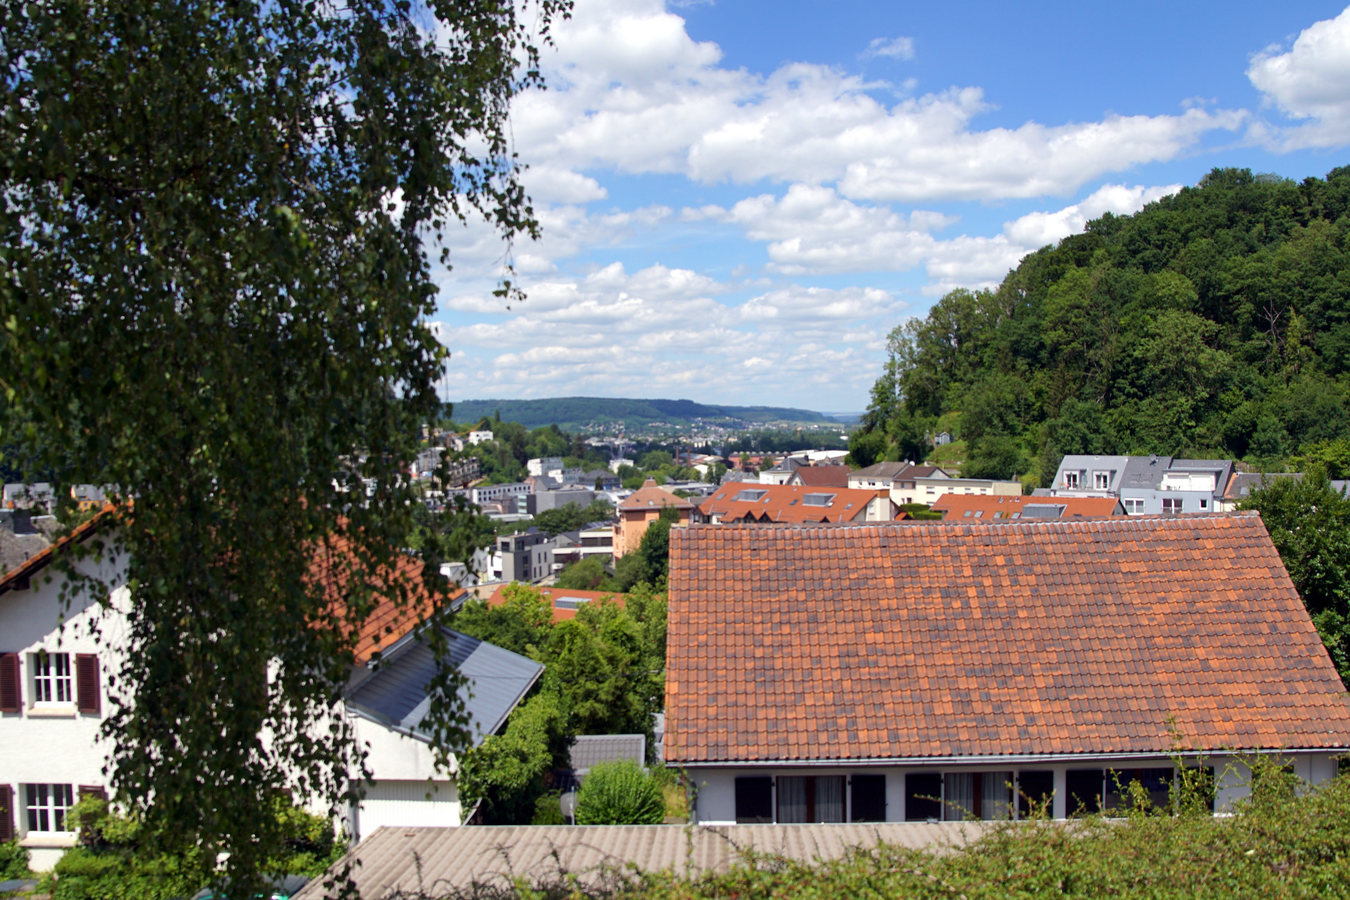 Stadtteil Weimerskirch